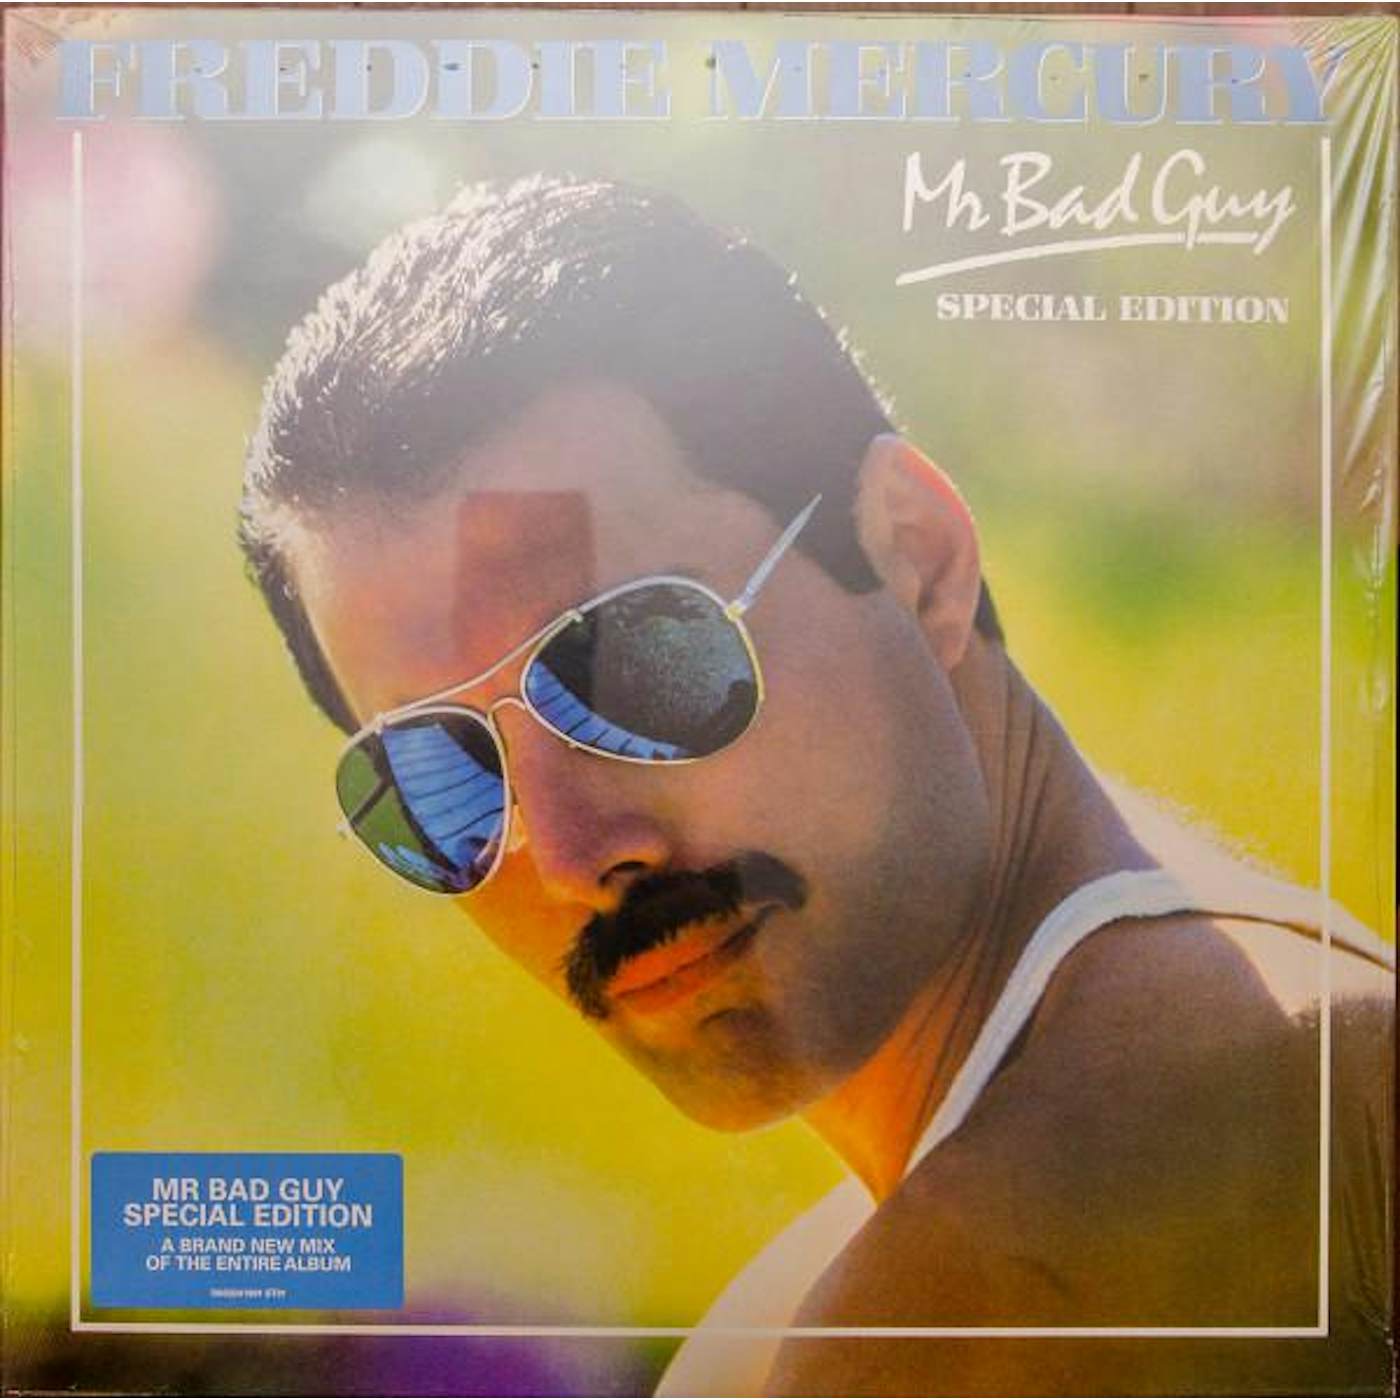 Freddie Mercury MR. BAD GUY (180G) Vinyl Record